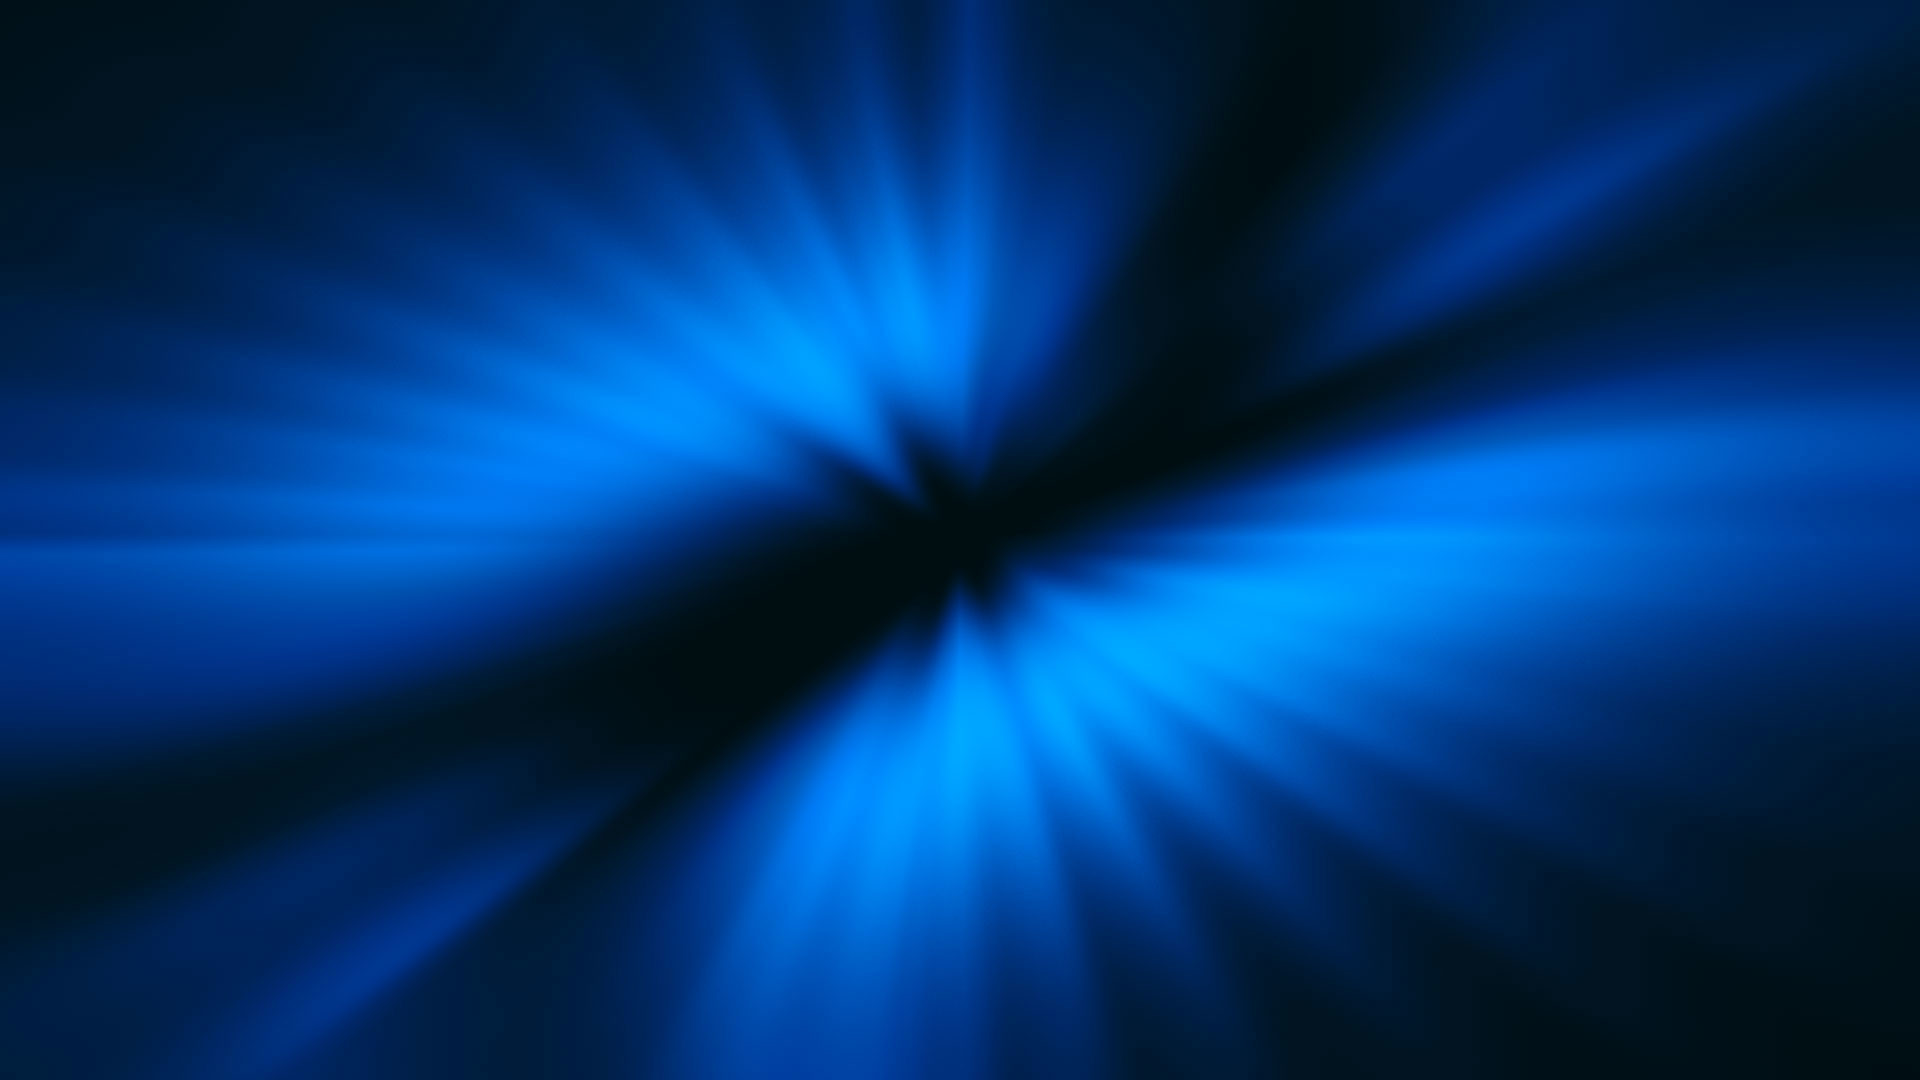 1920x1080 Dark Space Background Blue on Black